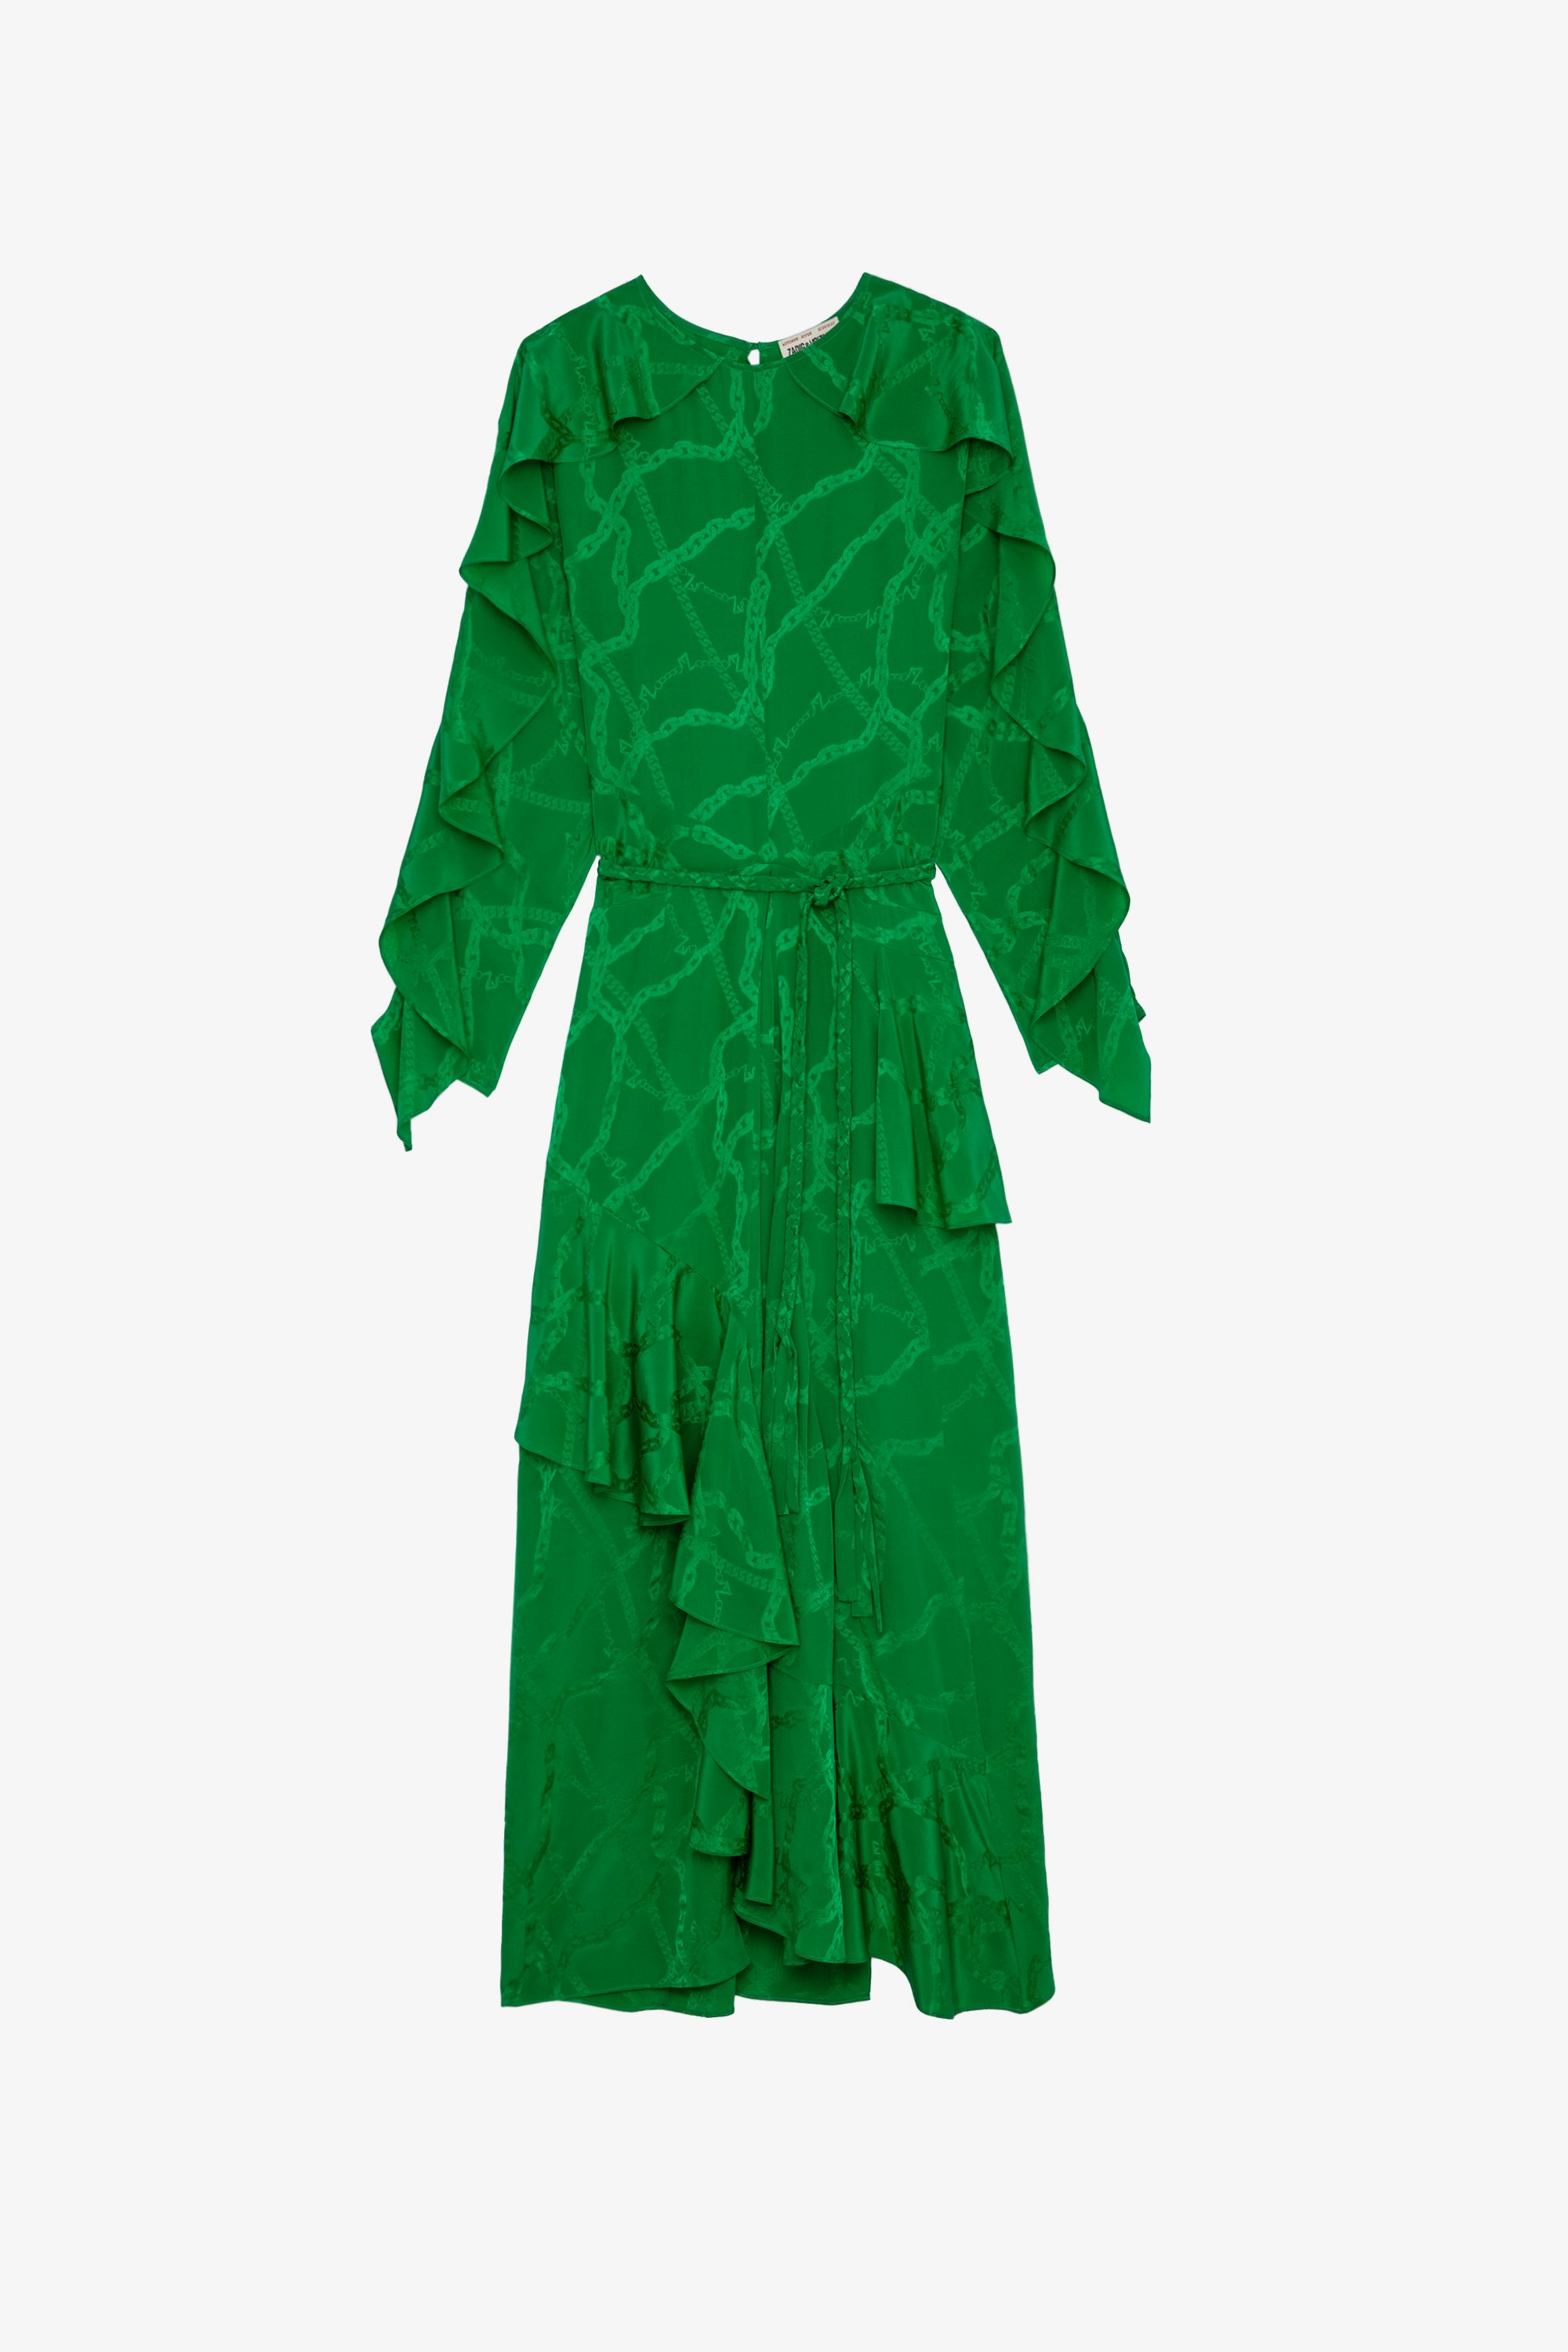 Robe Ritana Chaines Soie Robe longue en soie verte effet drapée et ornée d'un jacquard chaînes ZV, nouée d'une ceinture tressée à la taille femme 